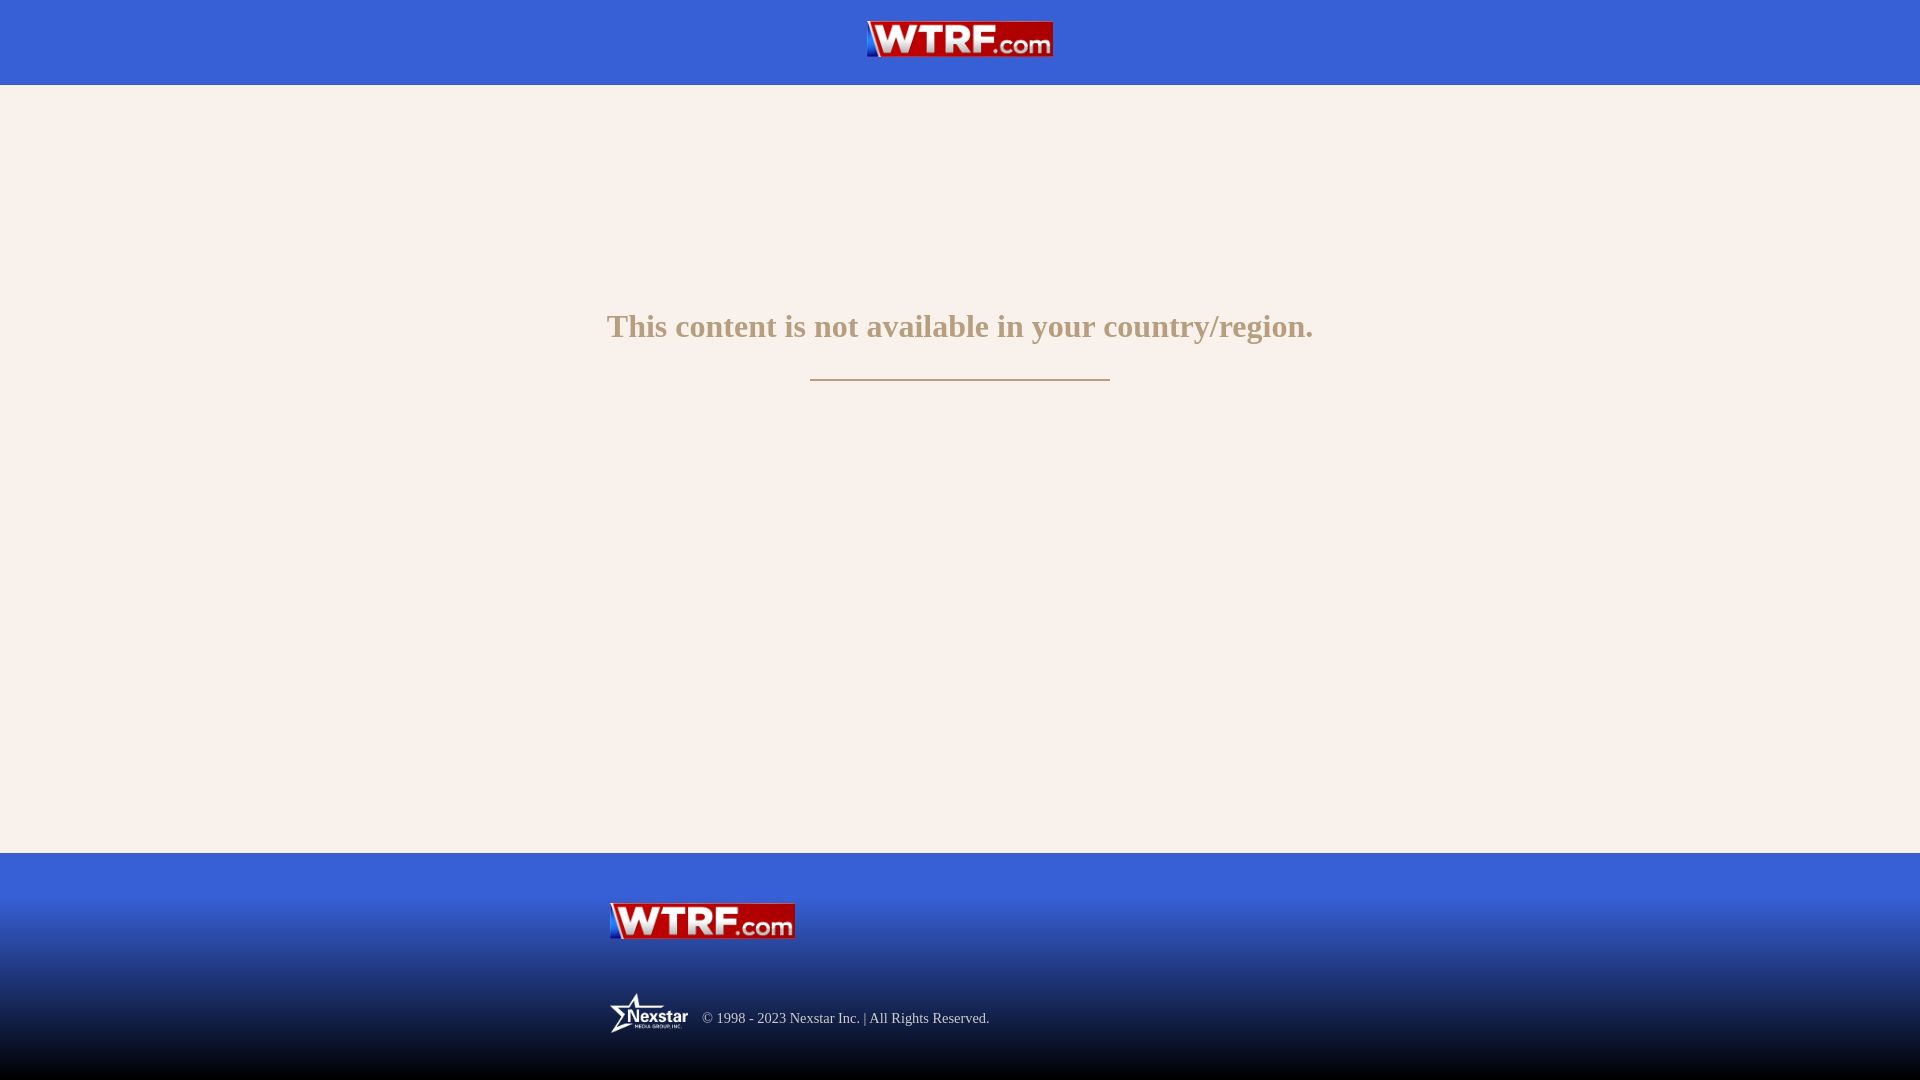 État du site web wtrf.com est   EN LIGNE